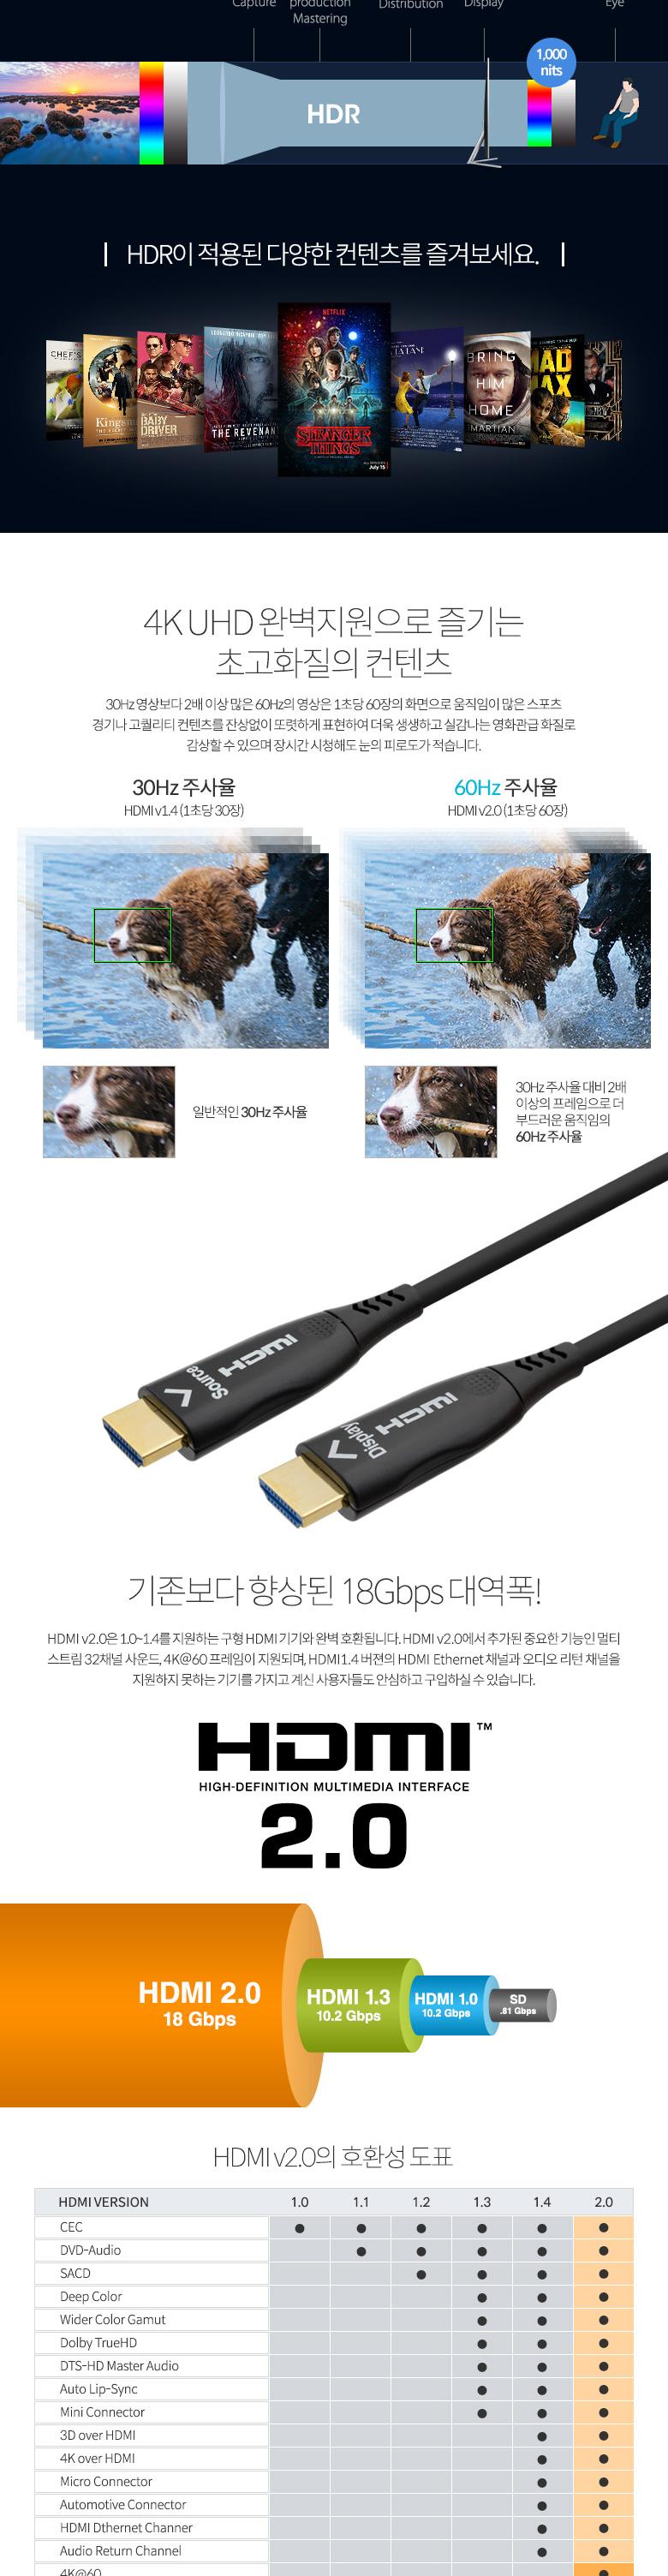 Coms HDMI V2.0  AOC  ̺(Optical + Coaxial) 10M. 4K2K 60Hz UHD ȭ̺ ̺ PC̺ ̺ ̺ ̺ ̺ Ϳ̺ Ʈ̺